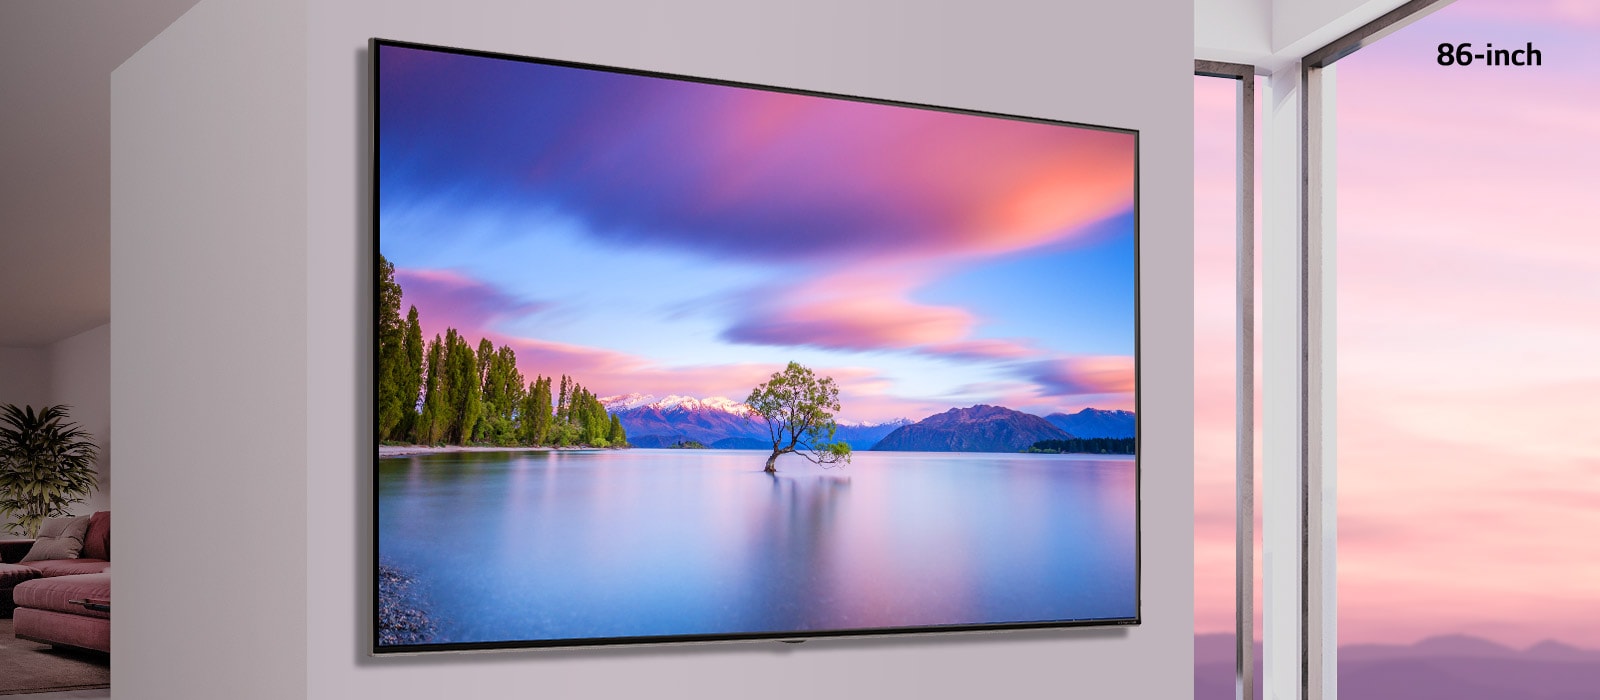 Scena koja prikazuje televizor sa ravnim ekranom montiran na beli zid. Dok se slika pomera strane na stranu, slika se menja između 55-inčnog i 86-inčnog televizora.